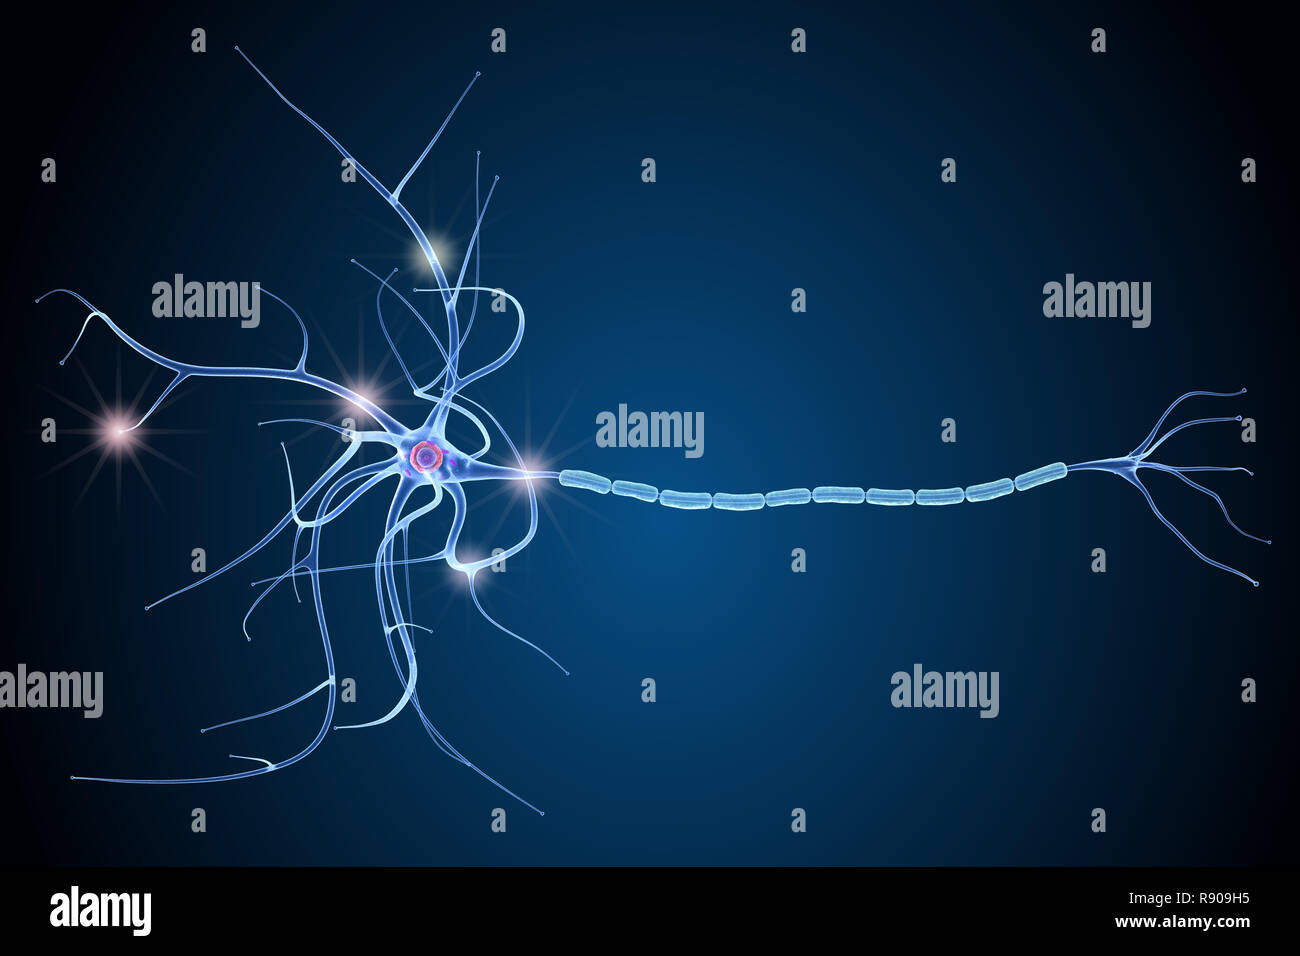 Anatomie des cellules nerveuses dans les détails. 3D illustration Banque D'Images